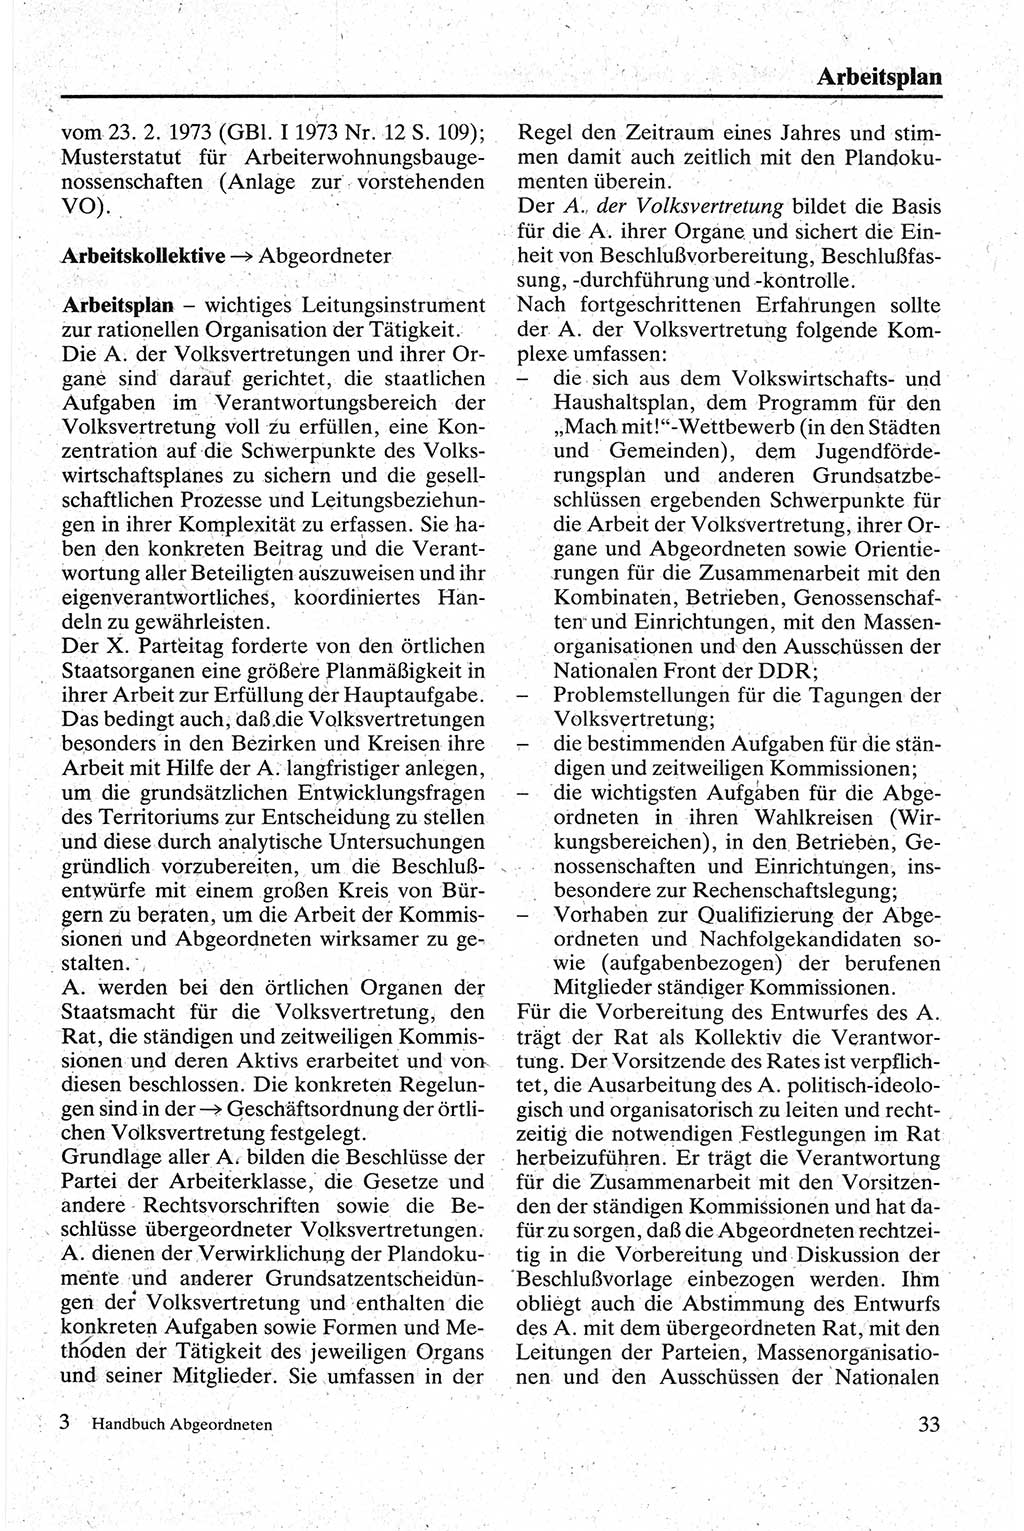 Handbuch für den Abgeordneten [Deutsche Demokratische Republik (DDR)] 1984, Seite 33 (Hb. Abg. DDR 1984, S. 33)